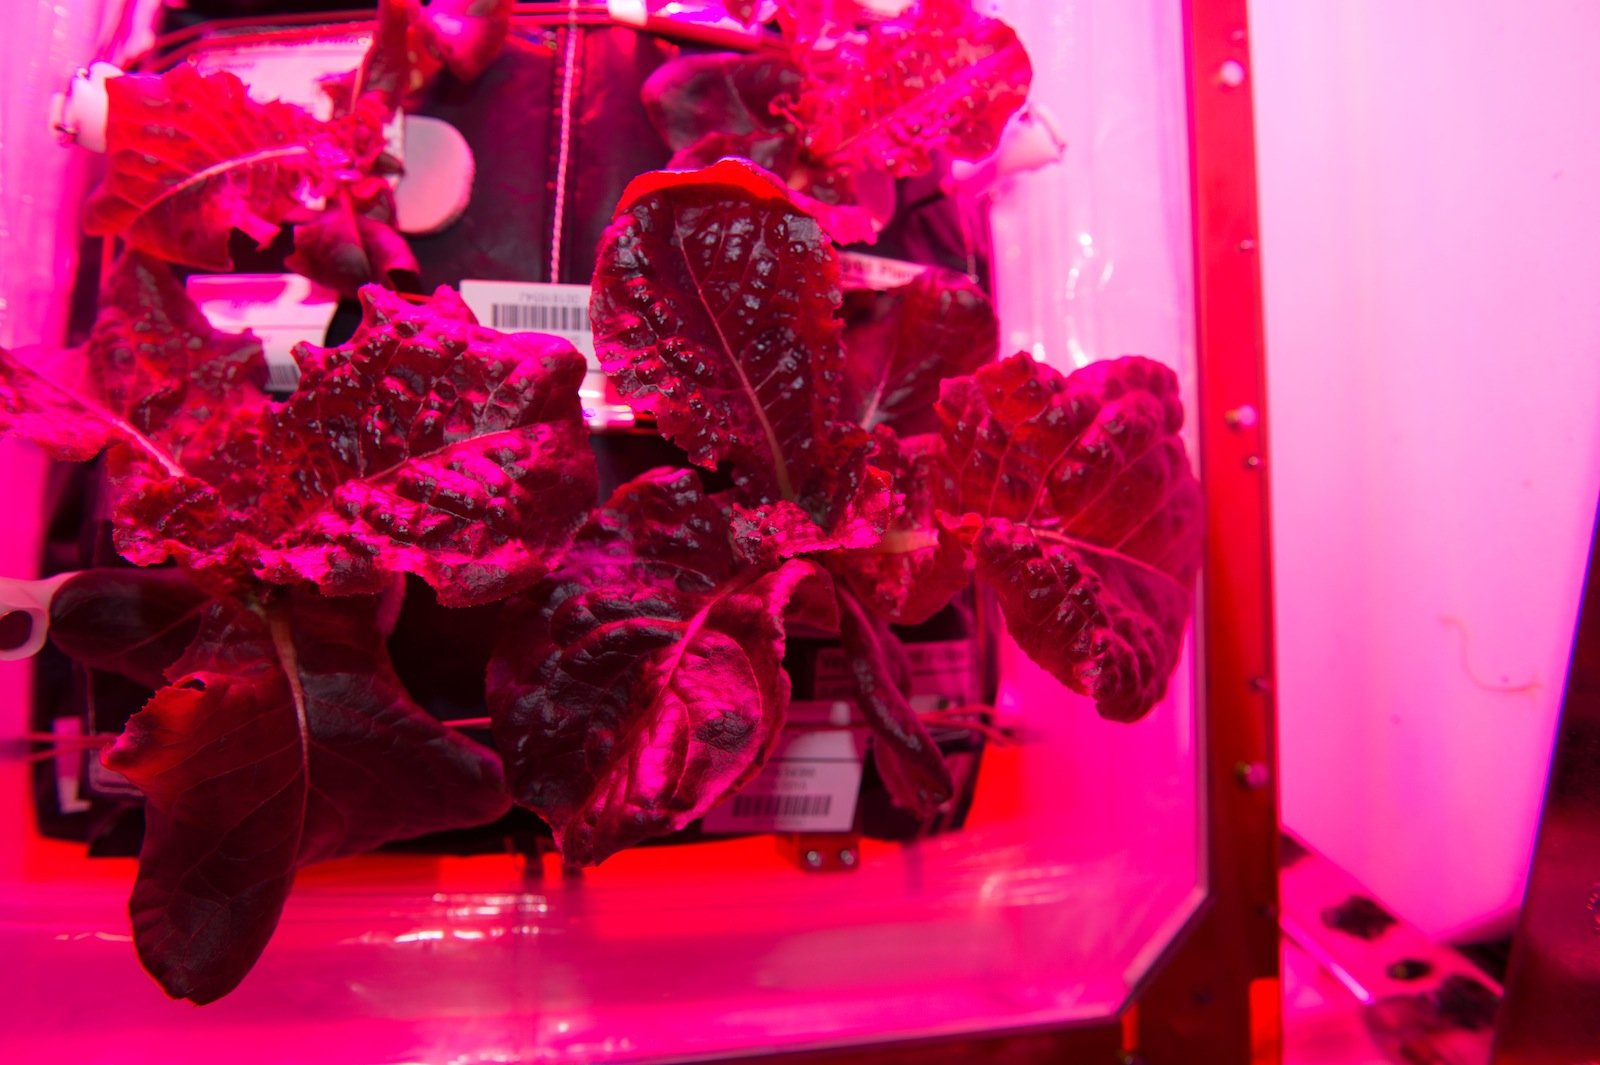 Der Römersalat kann geerntet werden. Unter der roten und blauen LED-Licht sieht das Gemüse pink aus.